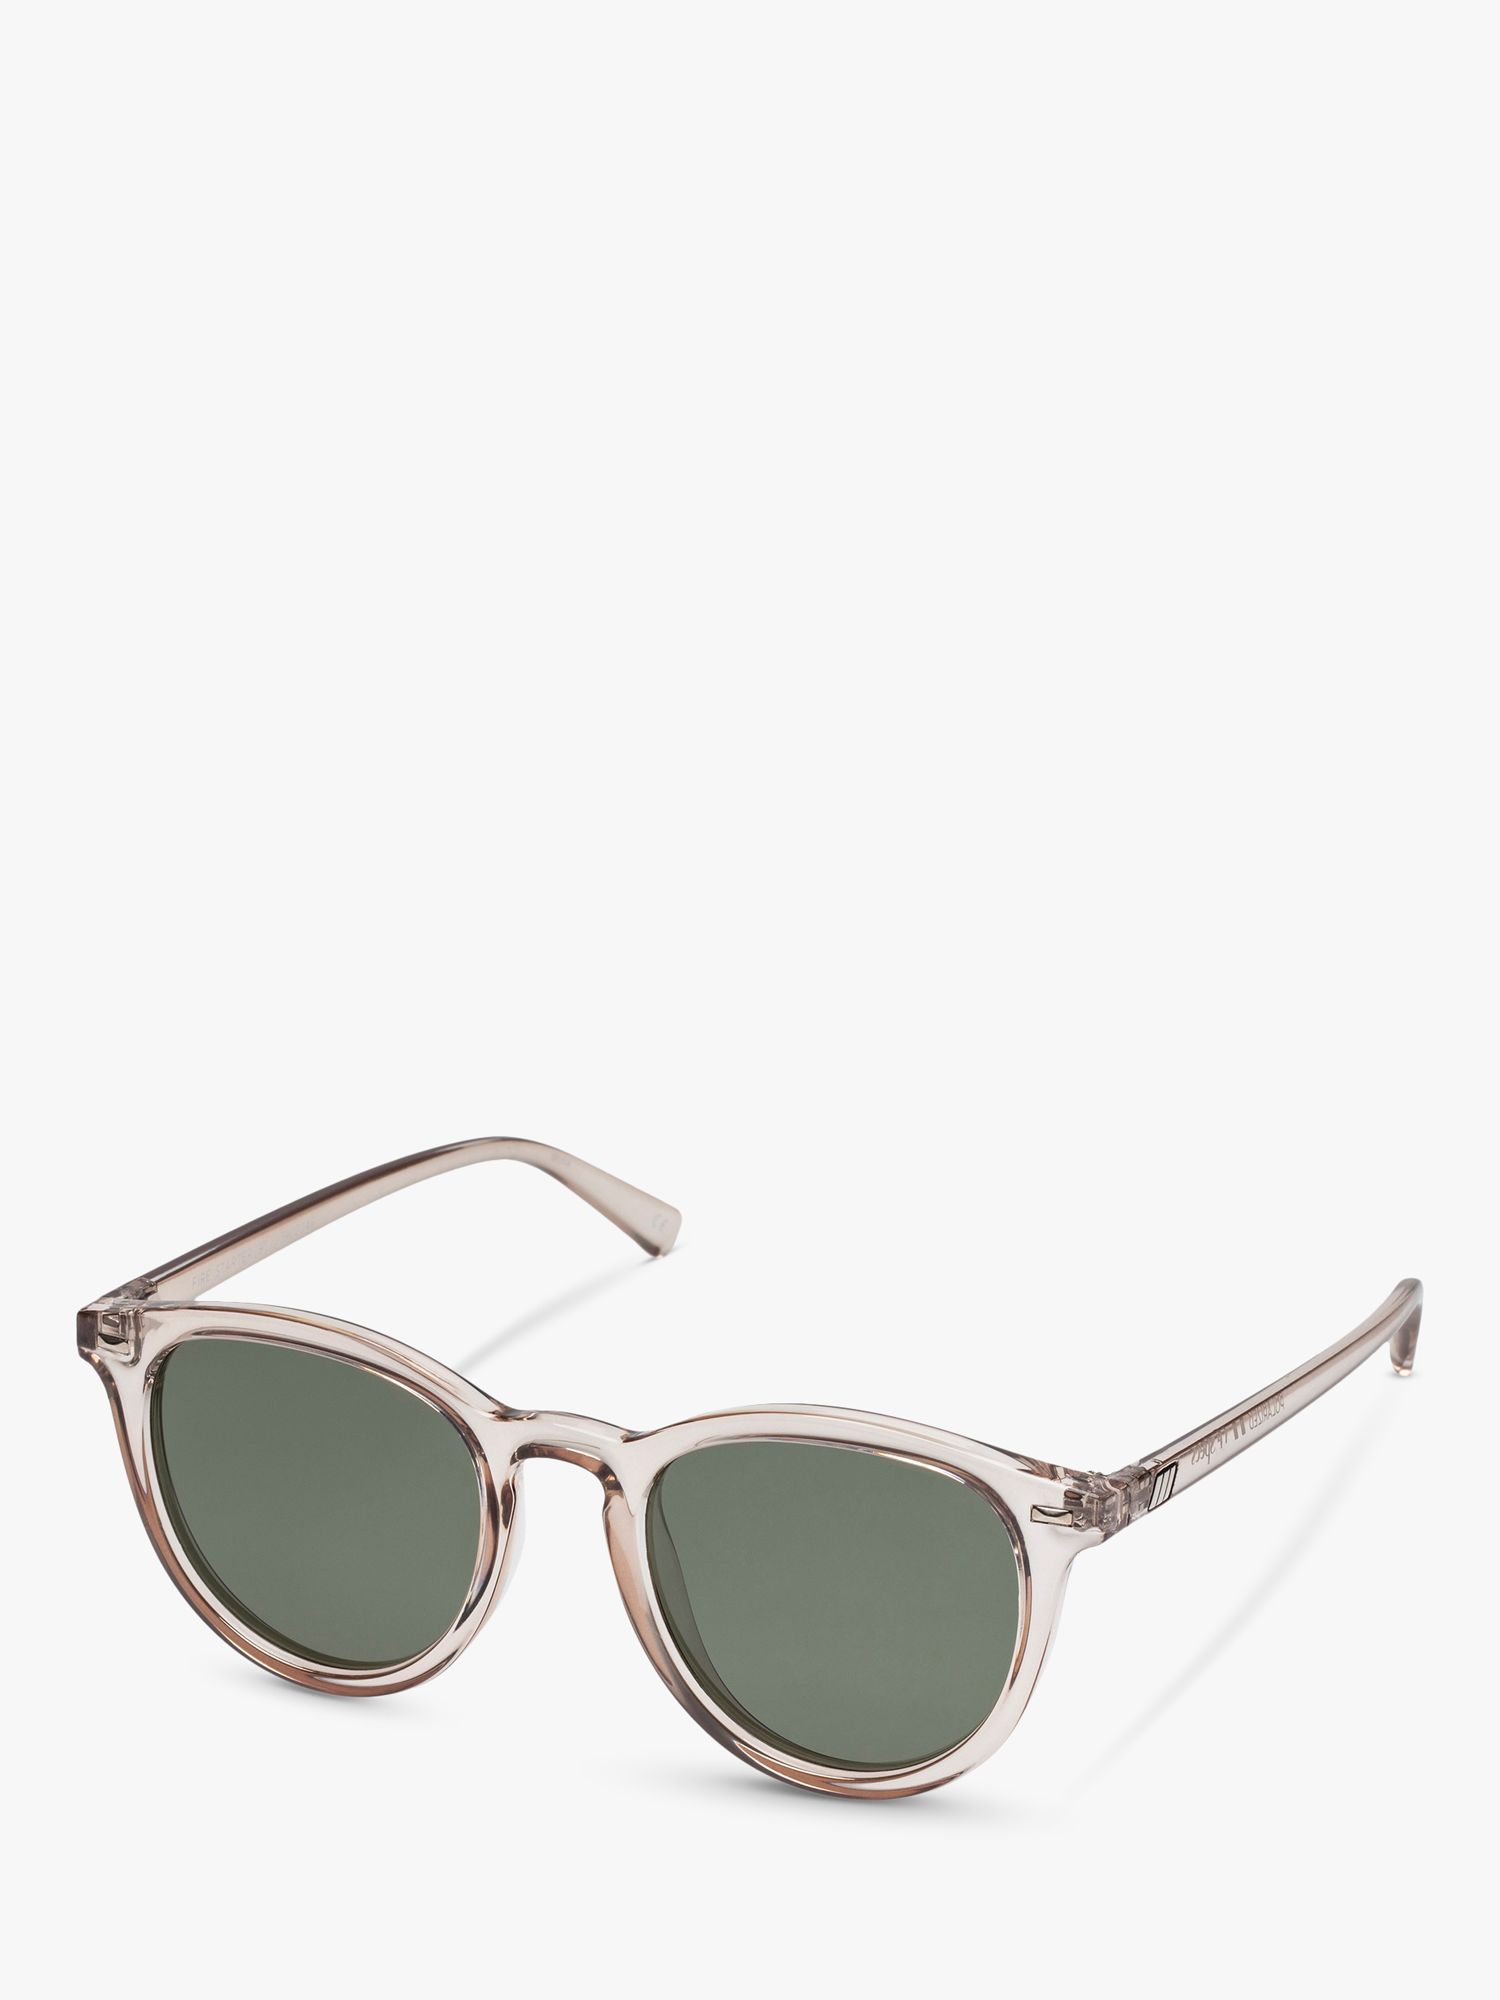 L5000148 Поляризованные овальные солнцезащитные очки унисекс Le Specs, прозрачный/коричневый